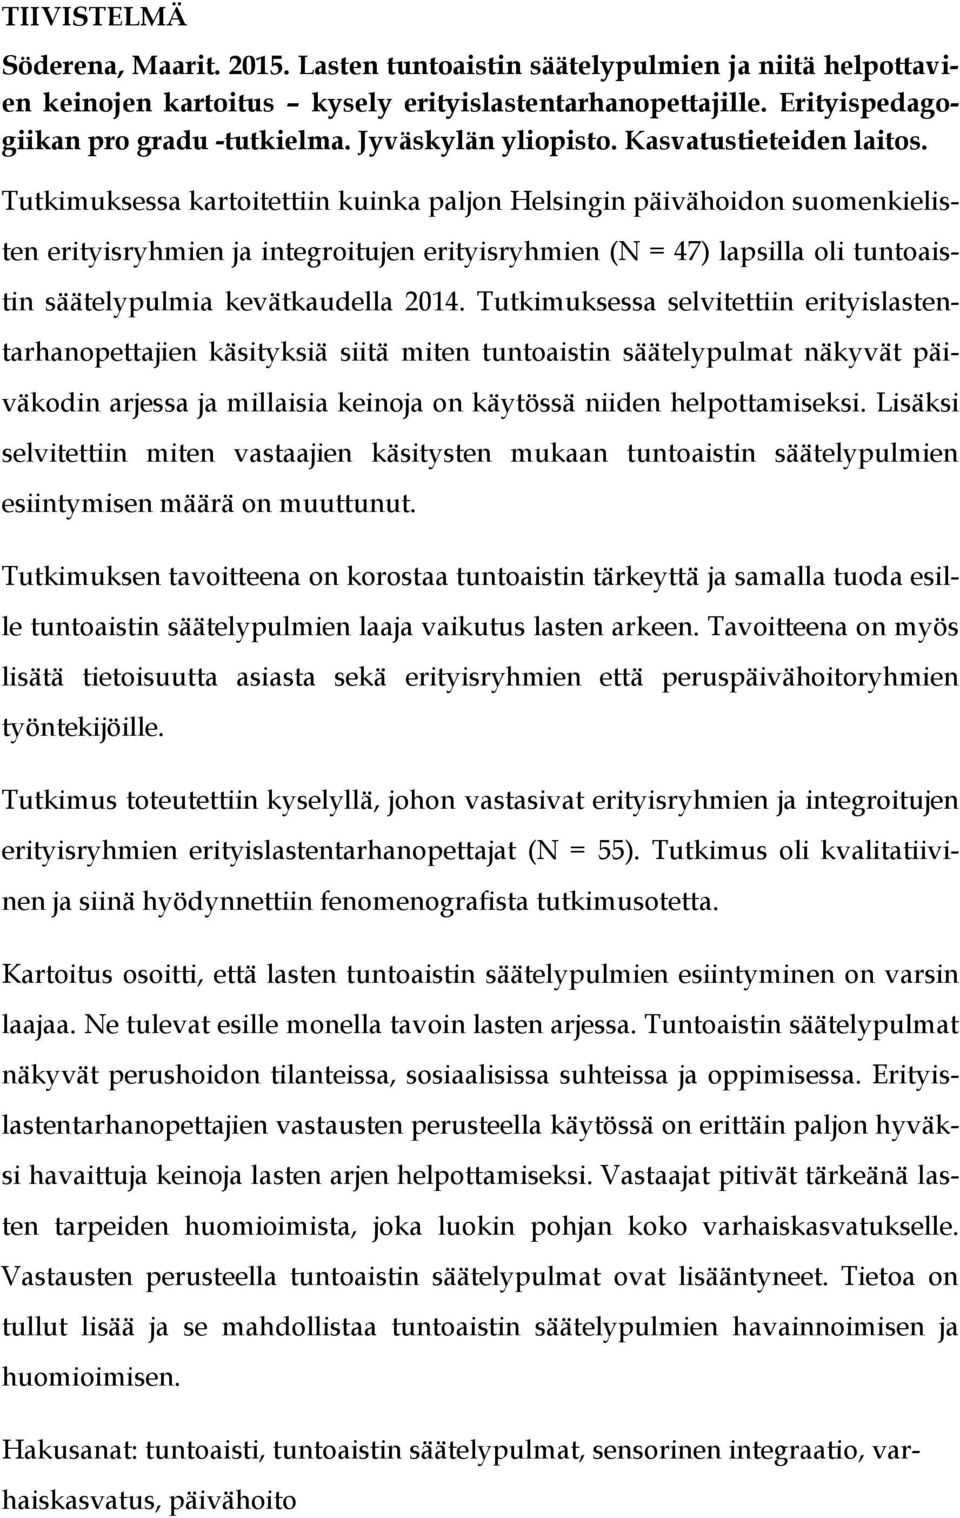 Tutkimuksessa kartoitettiin kuinka paljon Helsingin päivähoidon suomenkielisten erityisryhmien ja integroitujen erityisryhmien (N = 47) lapsilla oli tuntoaistin säätelypulmia kevätkaudella 2014.